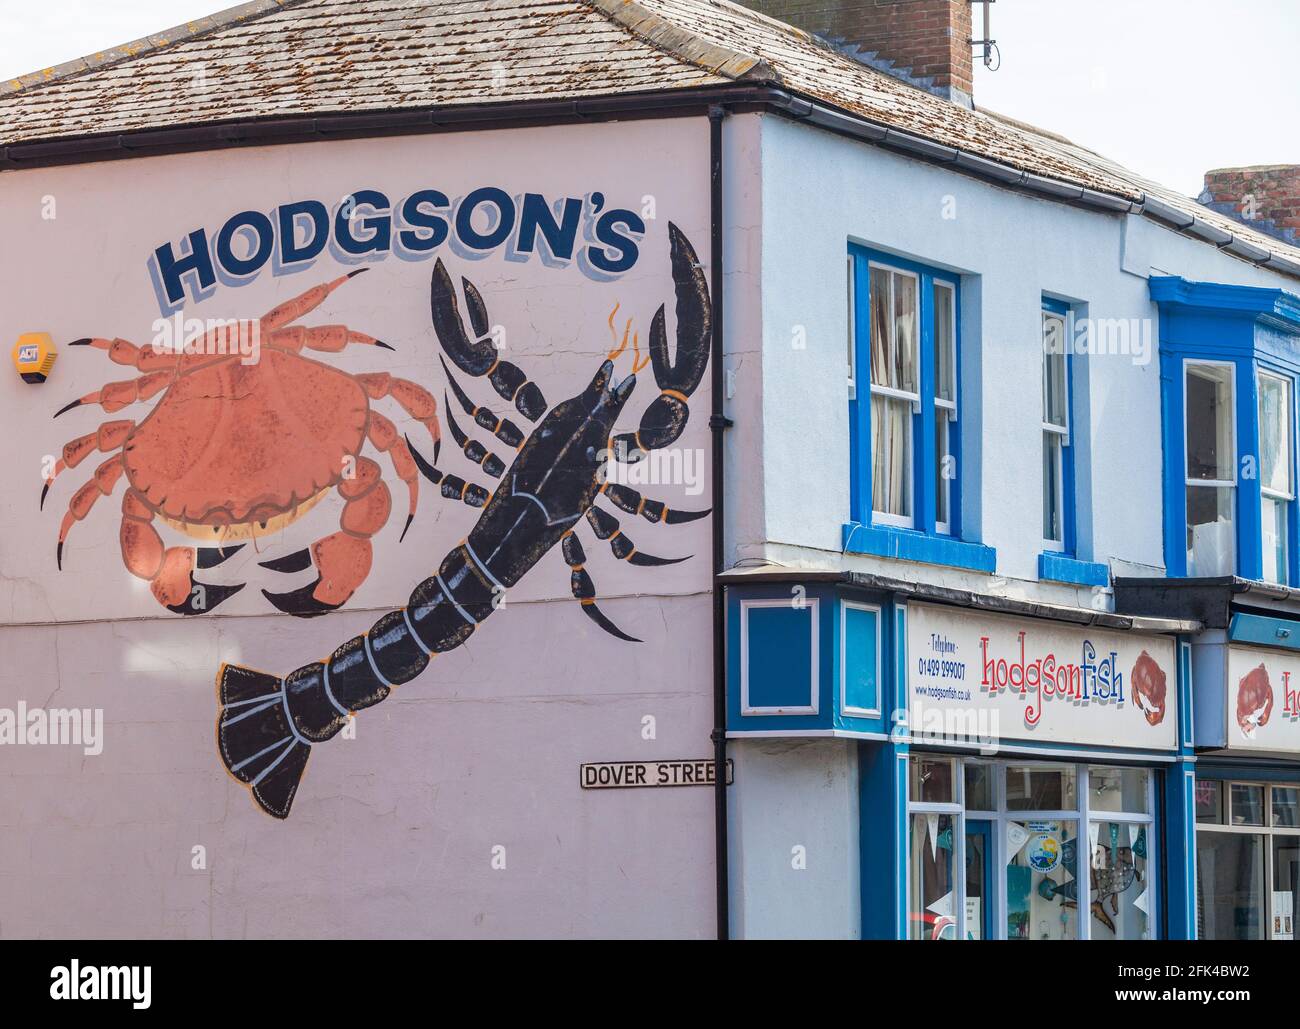 Hodgsons de Hartlepool sur la côte nord-est de l'Angleterre, l'une des régions les plus grands fournisseurs de poisson Banque D'Images